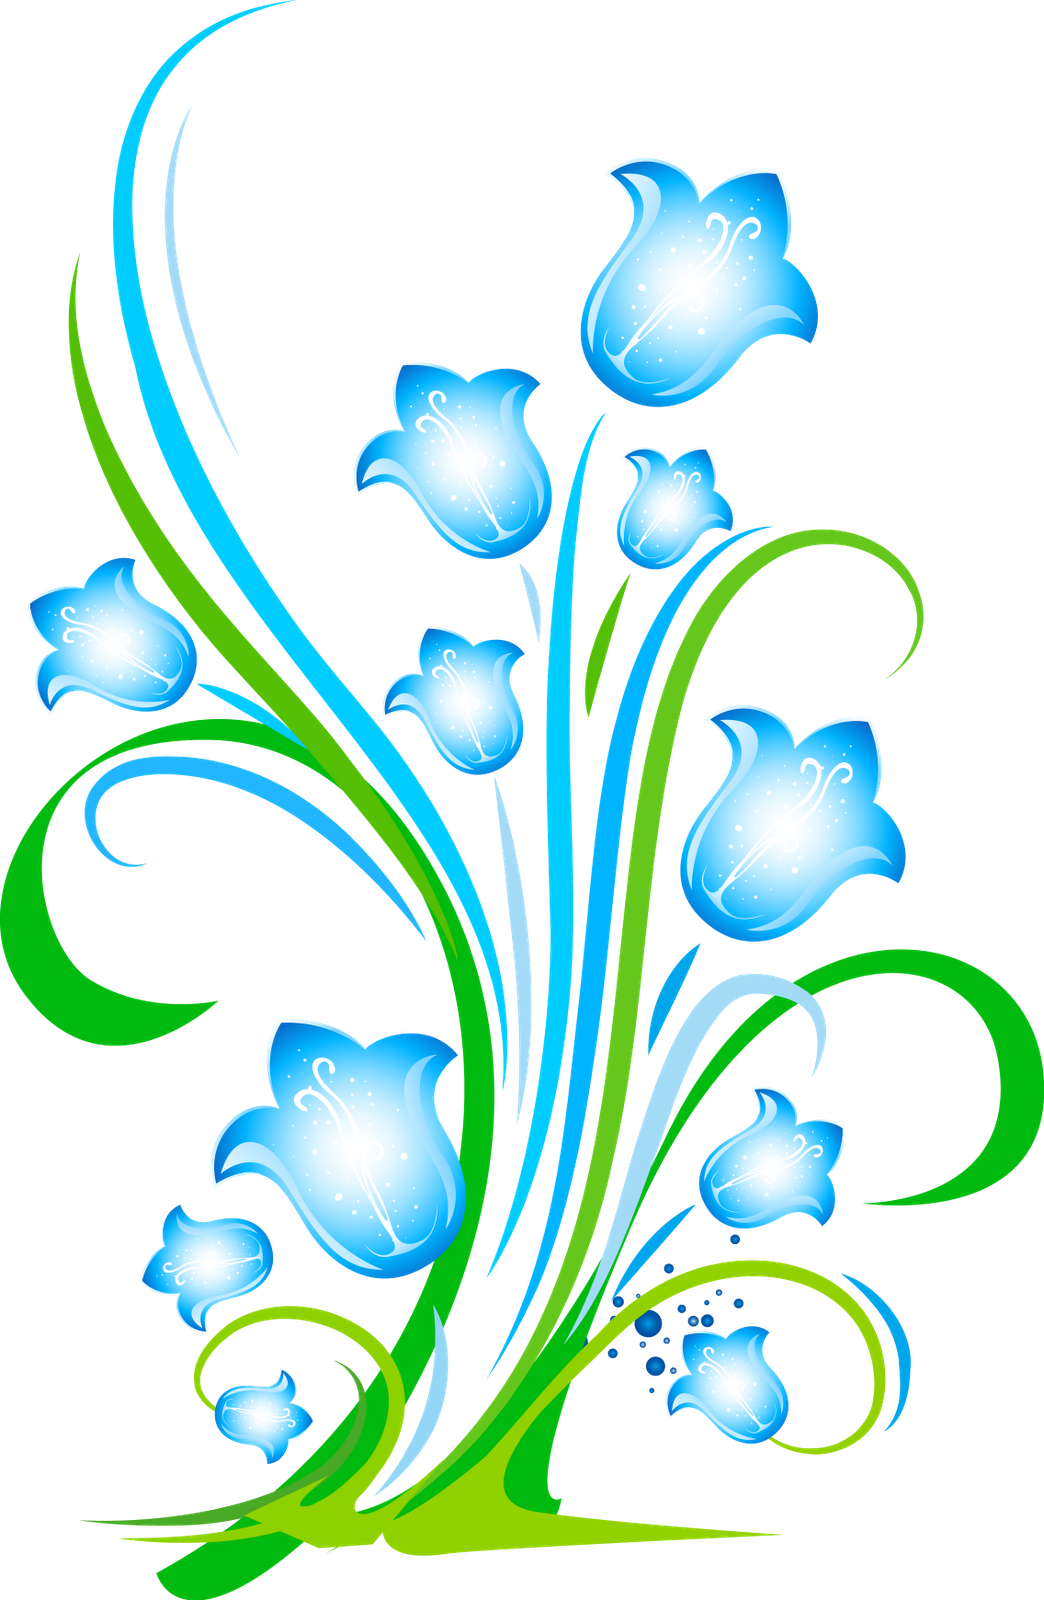 Download PNG image - Floral Transparent Background 